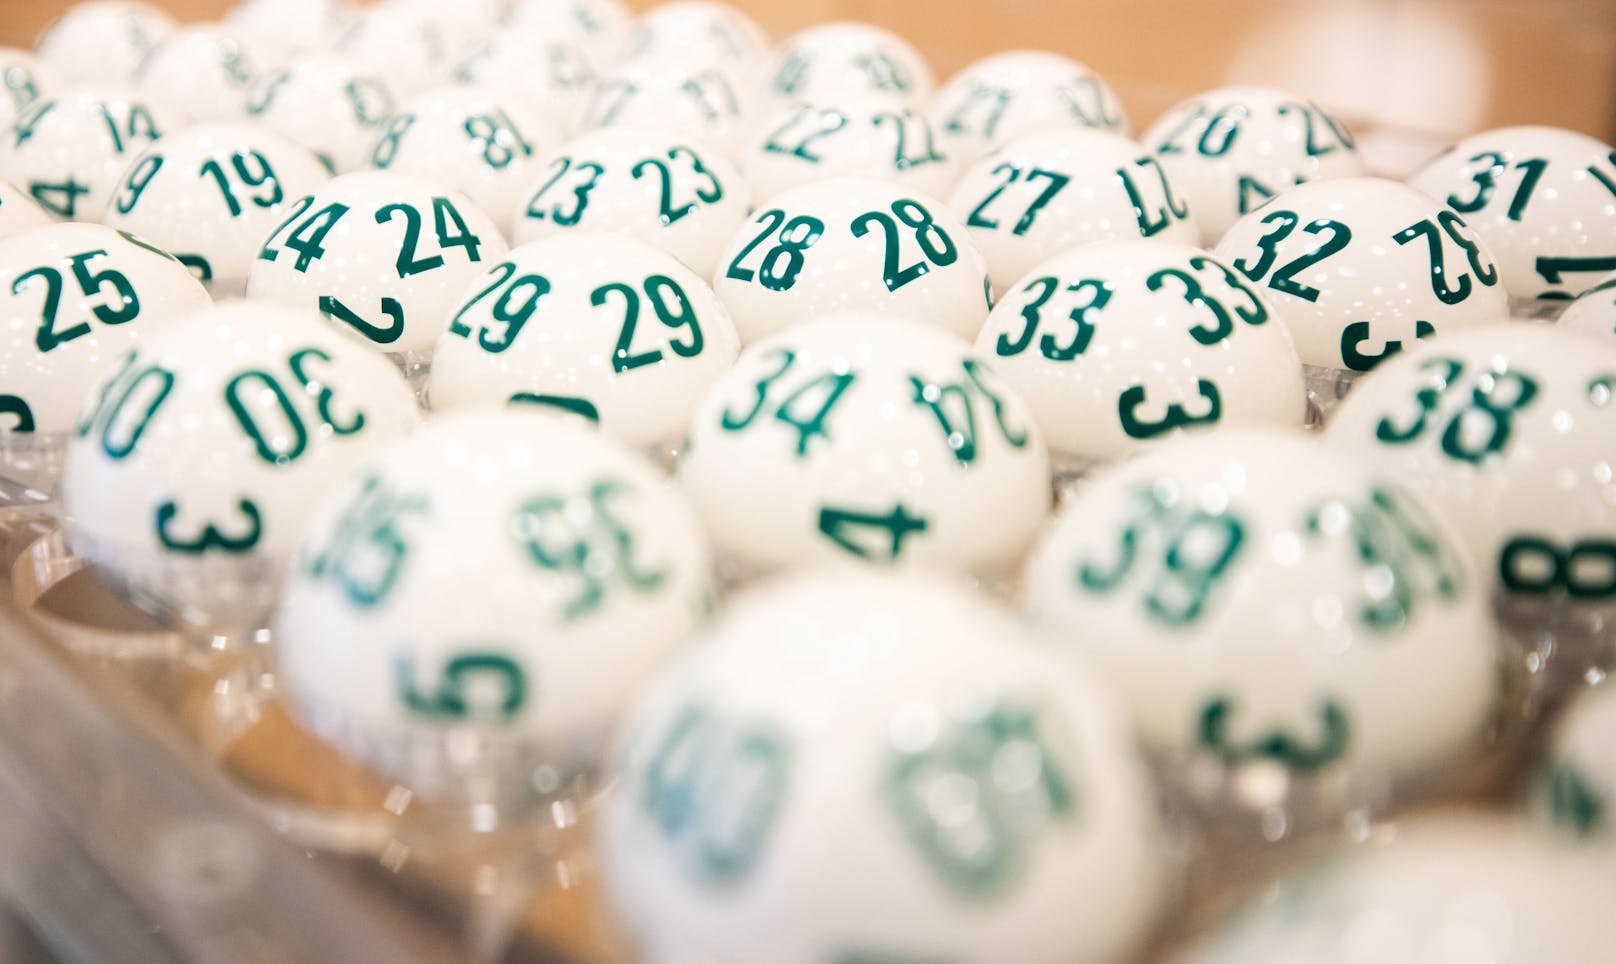 Kein Lotto-Tipp richtig, Glückspilz gewinnt 200.000 €